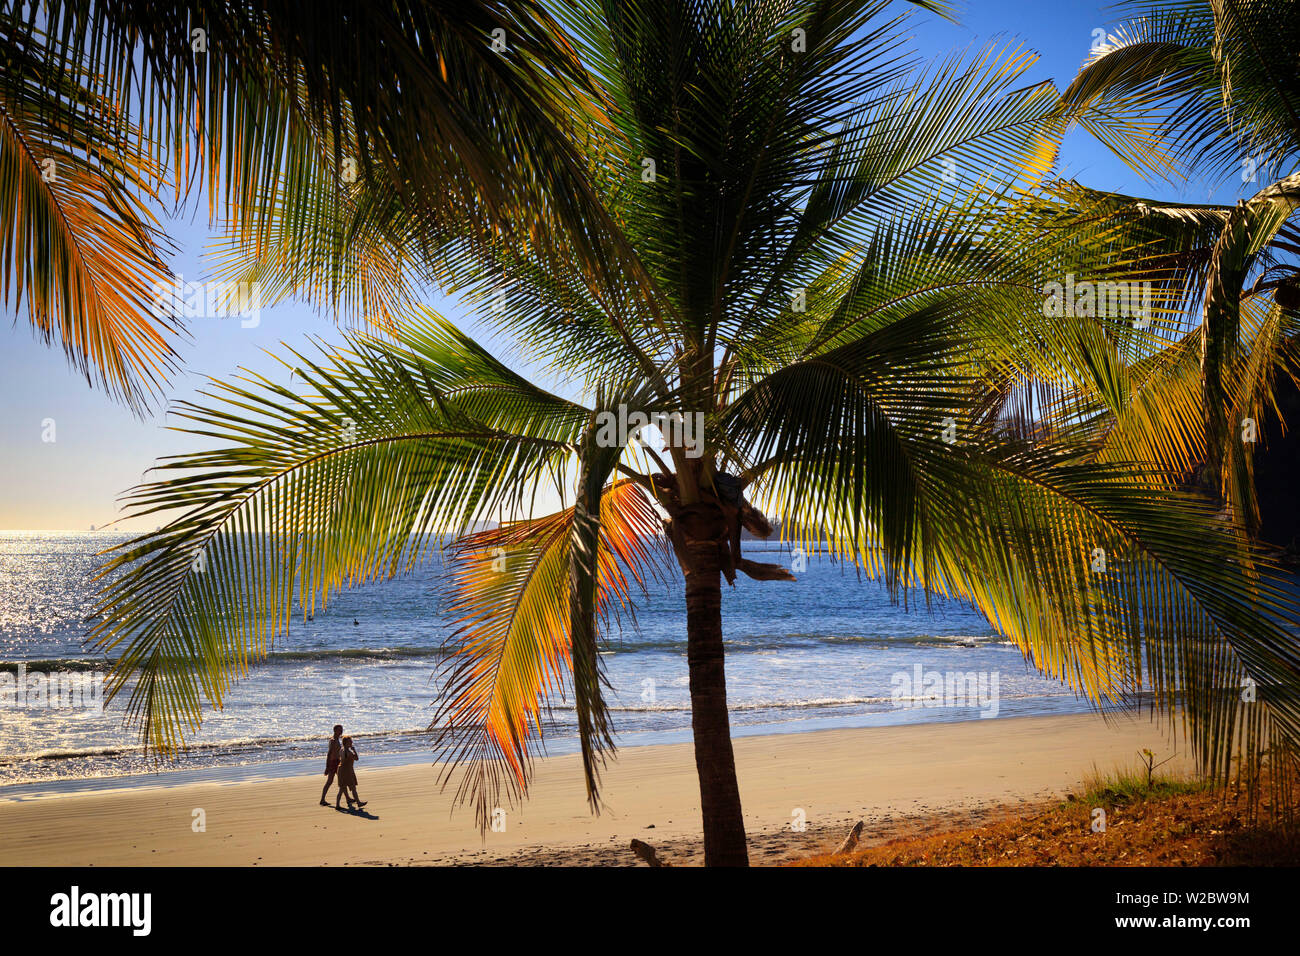 Costa Rica, Guanacaste, Nicoya Peninsula, Playa Pan de Azucar Stock Photo